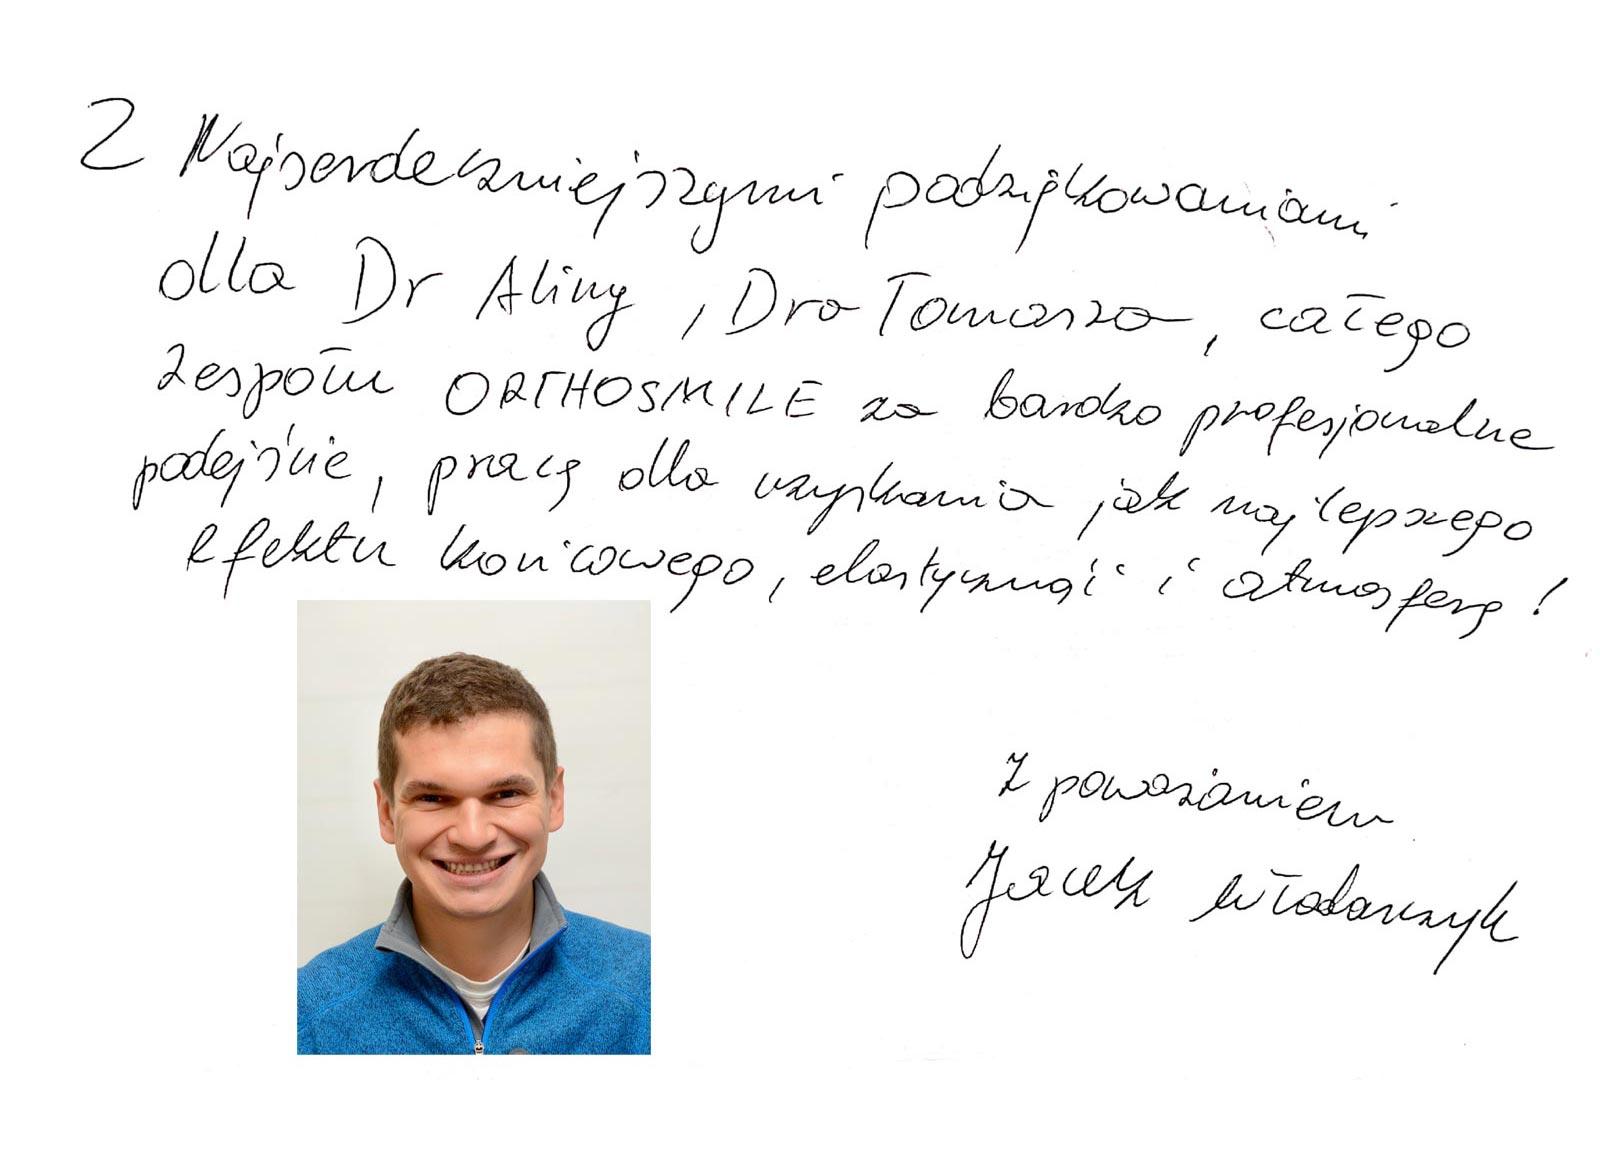 Patientenbuch - Erfahrungsberichte und Komplimente von unseren Patienten. Orthosmile – kieferorthopädische Praxis in Breslau, Polen